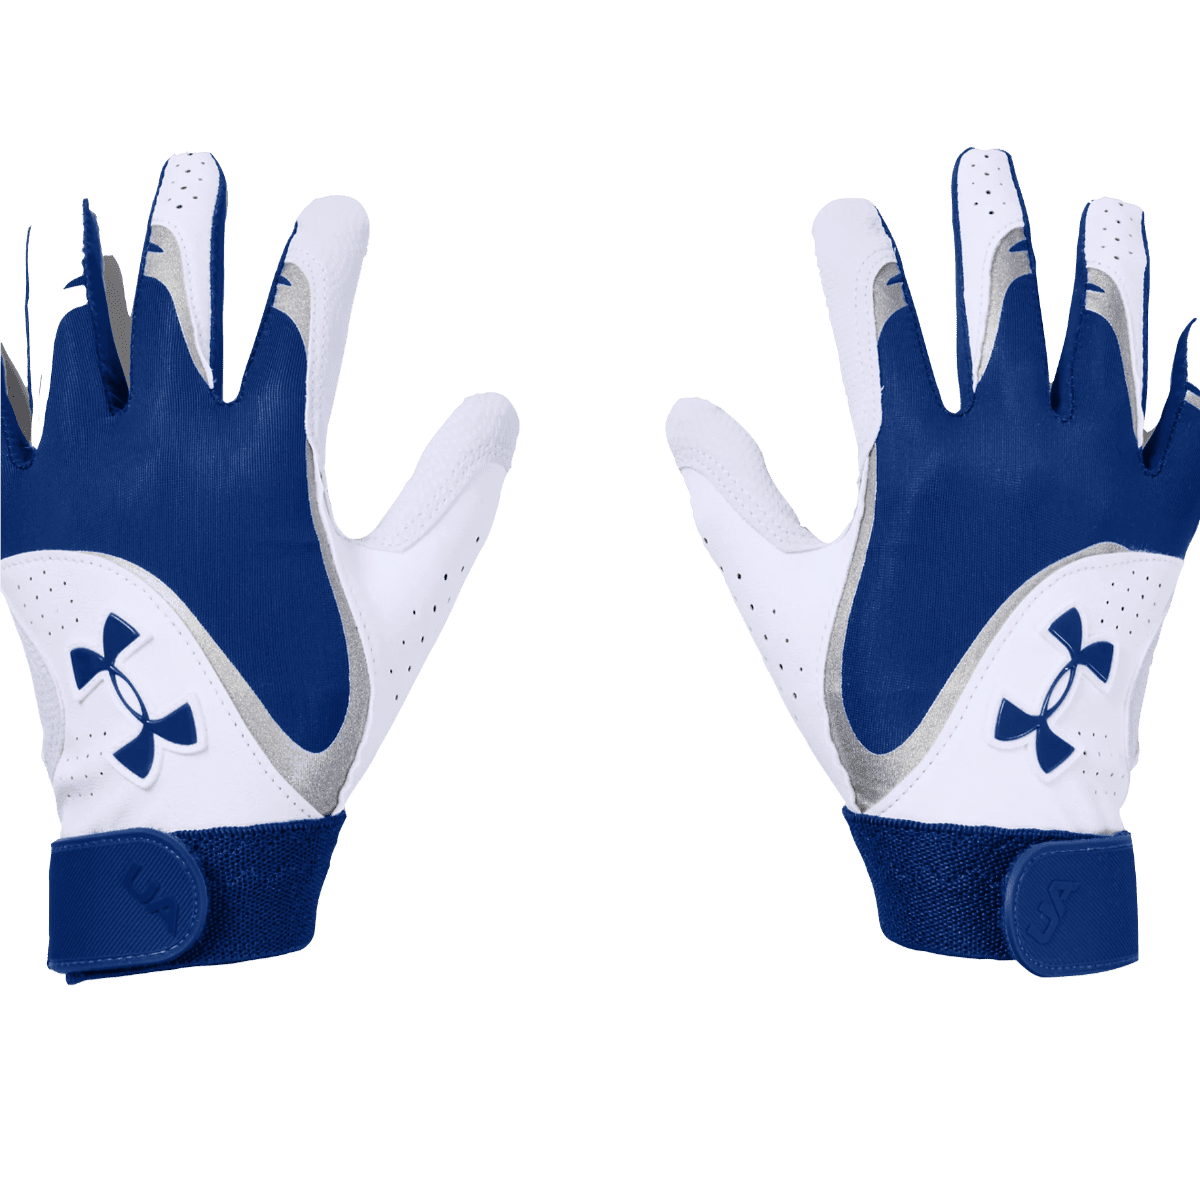 Under Armour Women's Radar Batting Gloves - Blue, MD